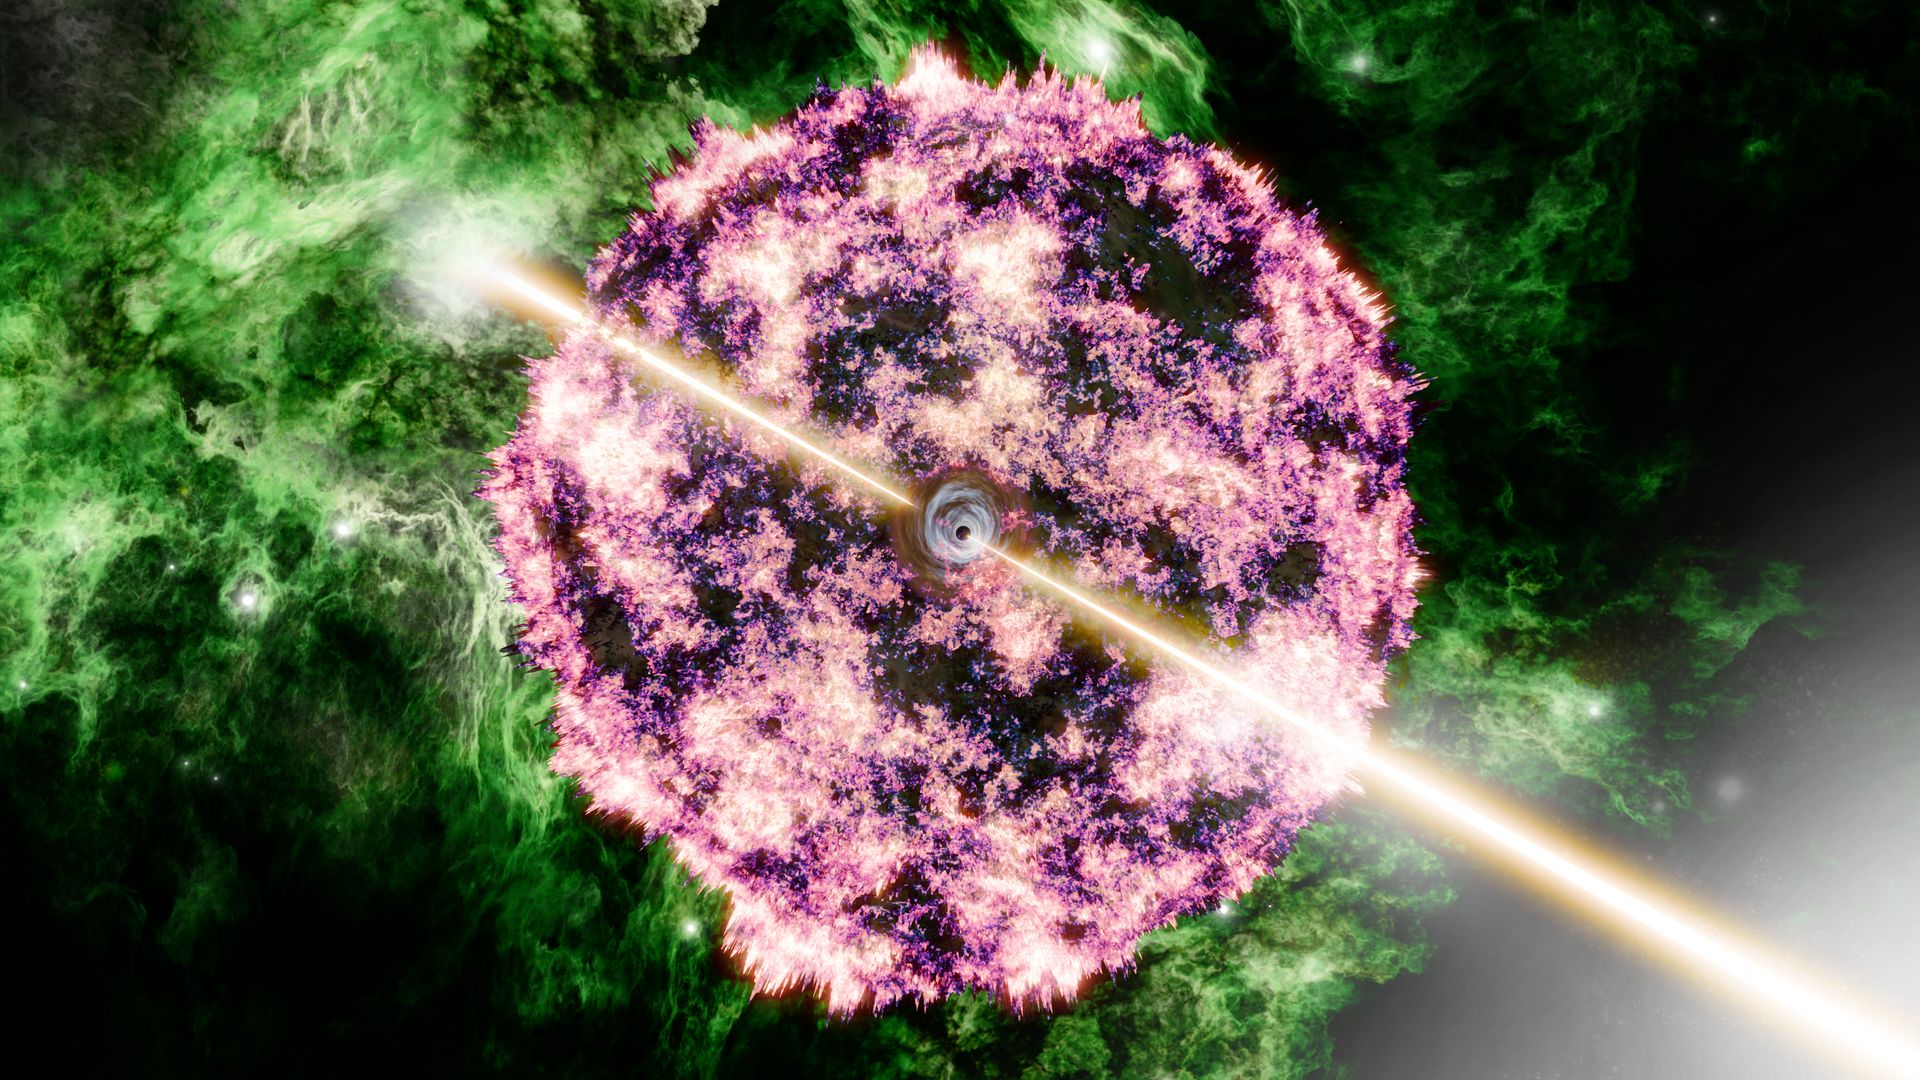 astronomie: wie der gigantische lichtblitz von phänomen grb221009a entstanden ist